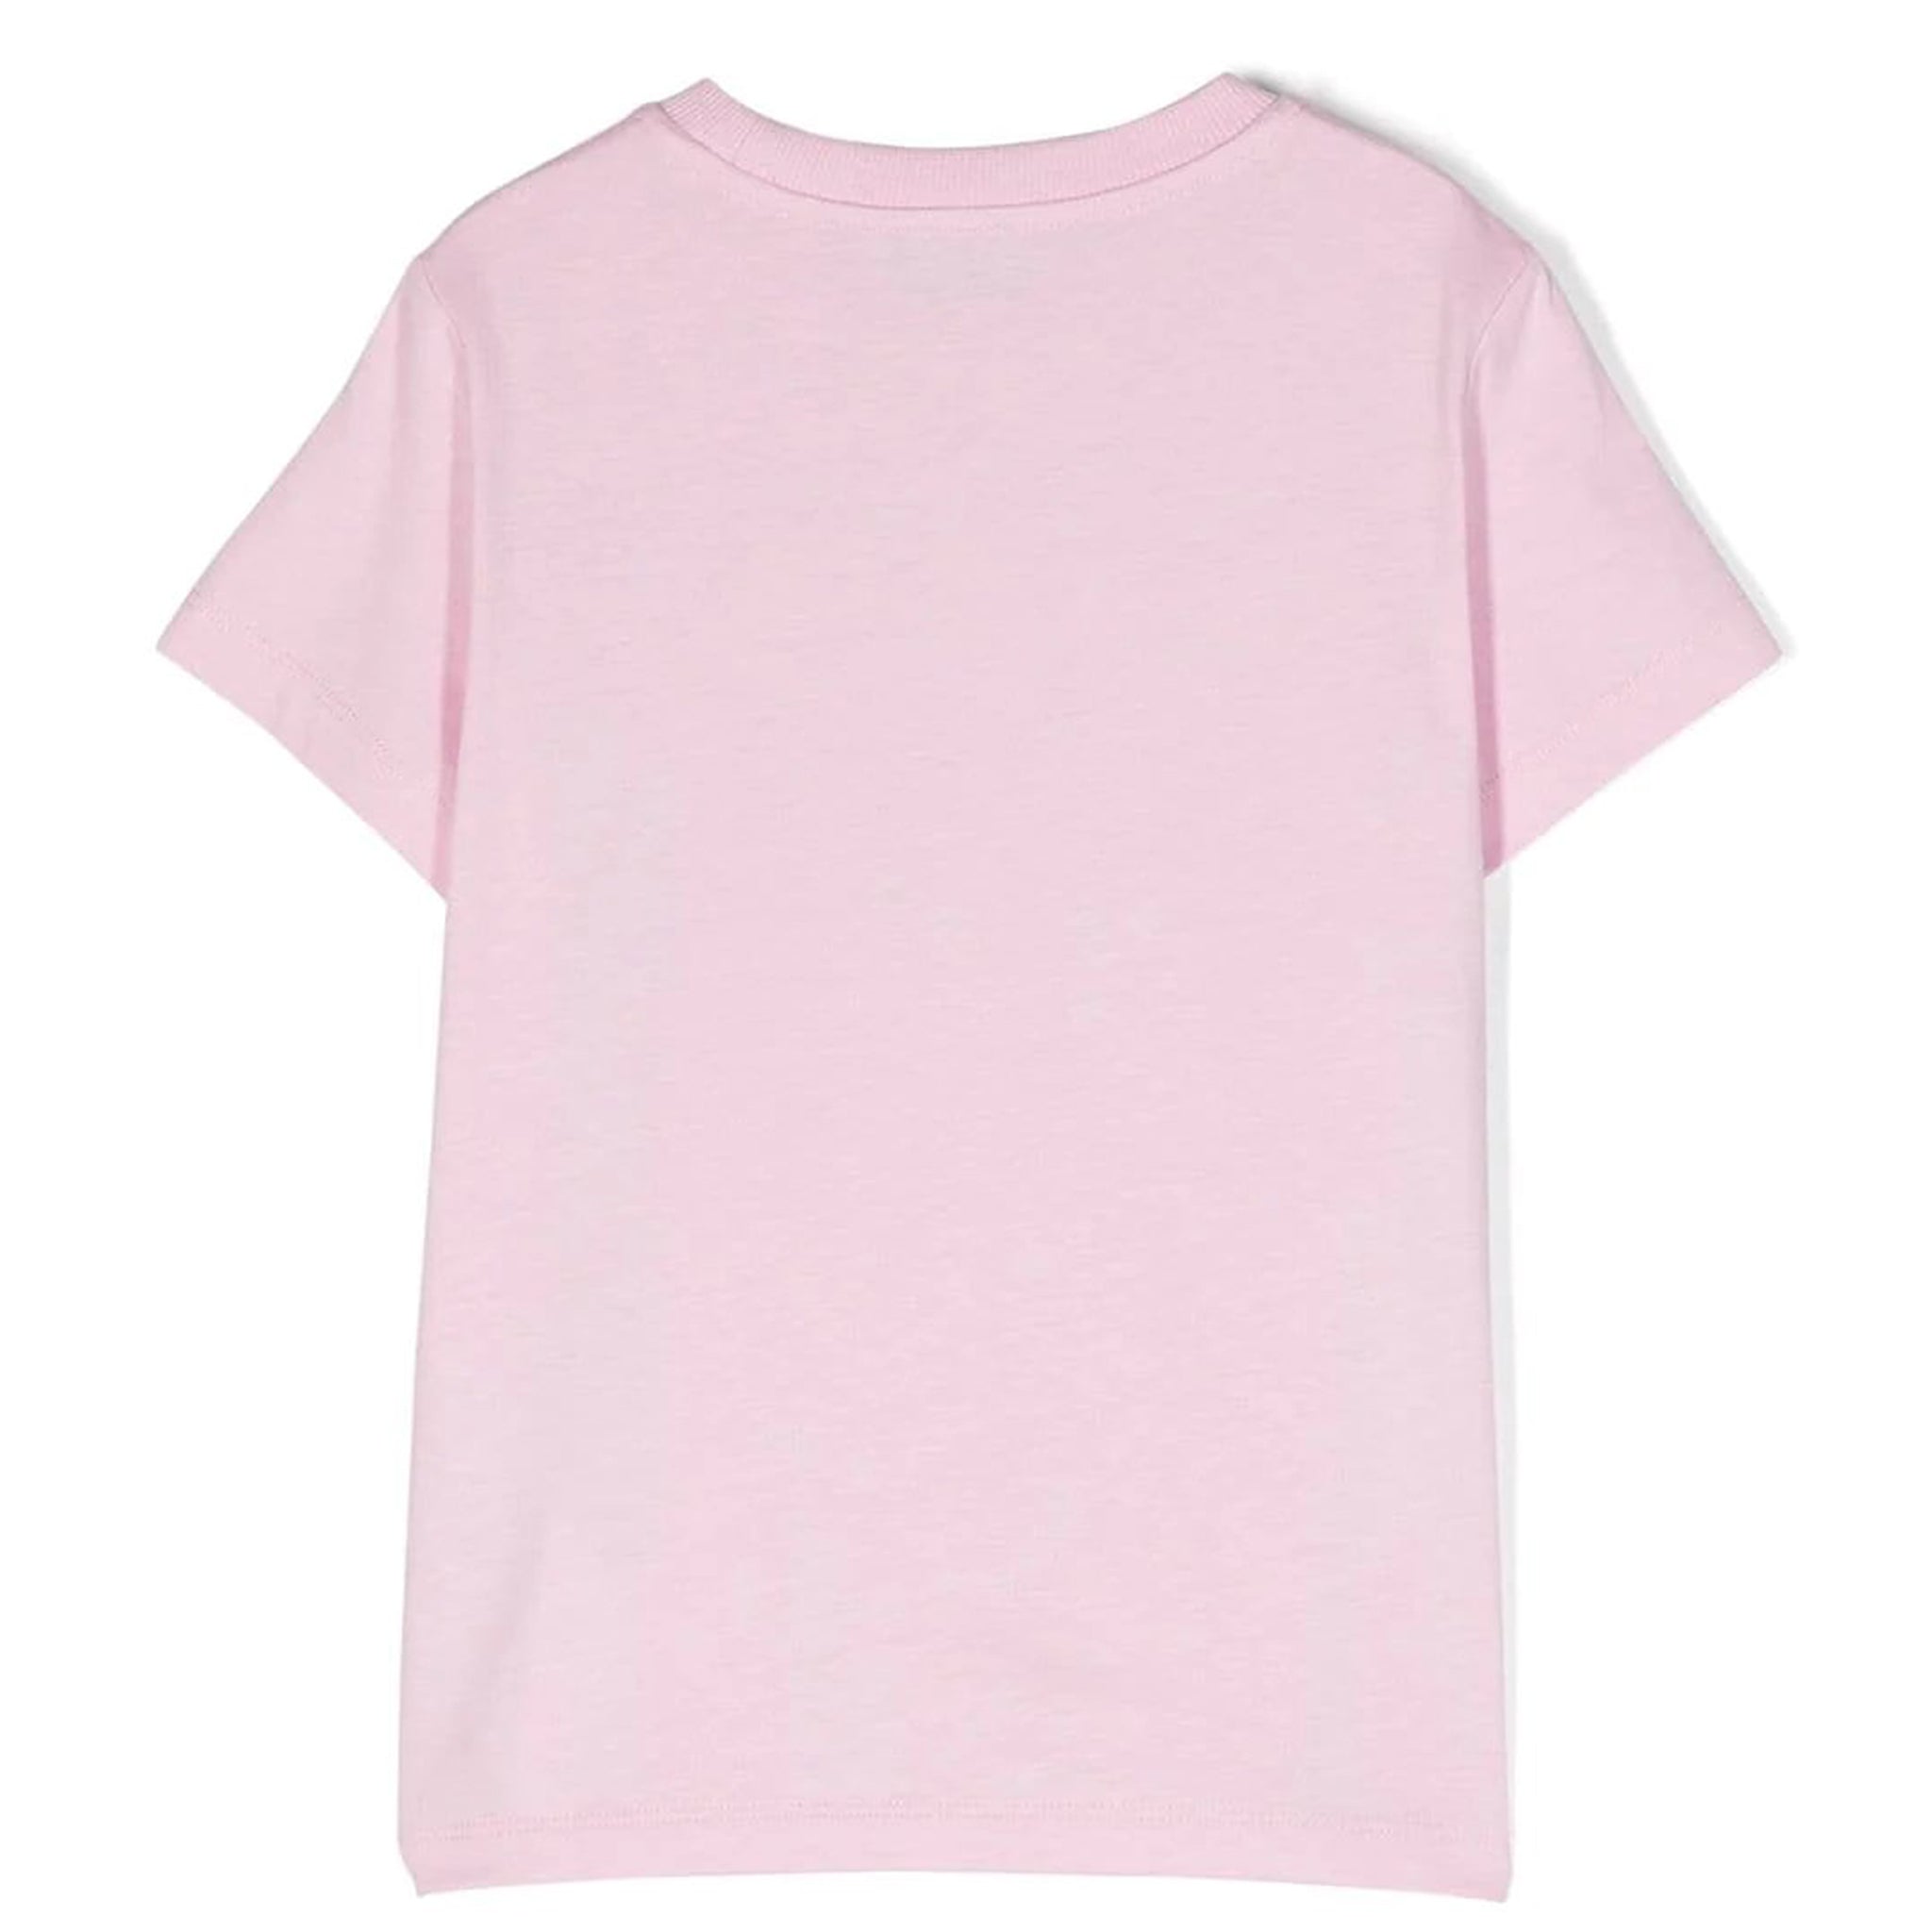 T-shirt Short Sleeve 6A Pirouette Pink 100%CO